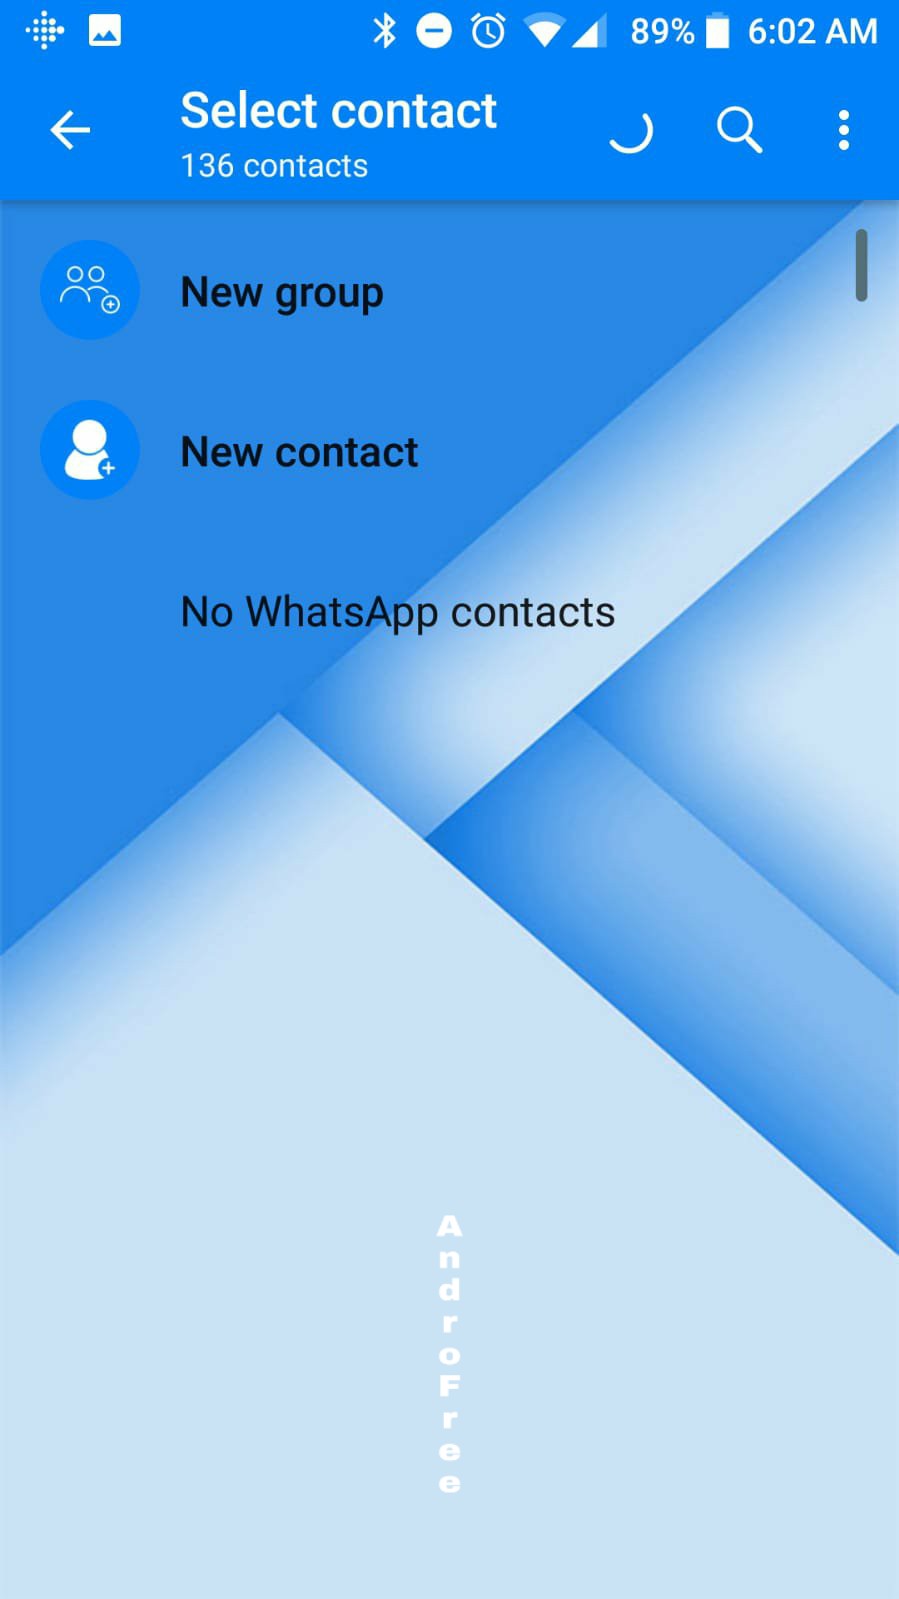 تحميل واتس اب بلس الأزرق WhatsApp Plus اخر إصدار للأندرويد